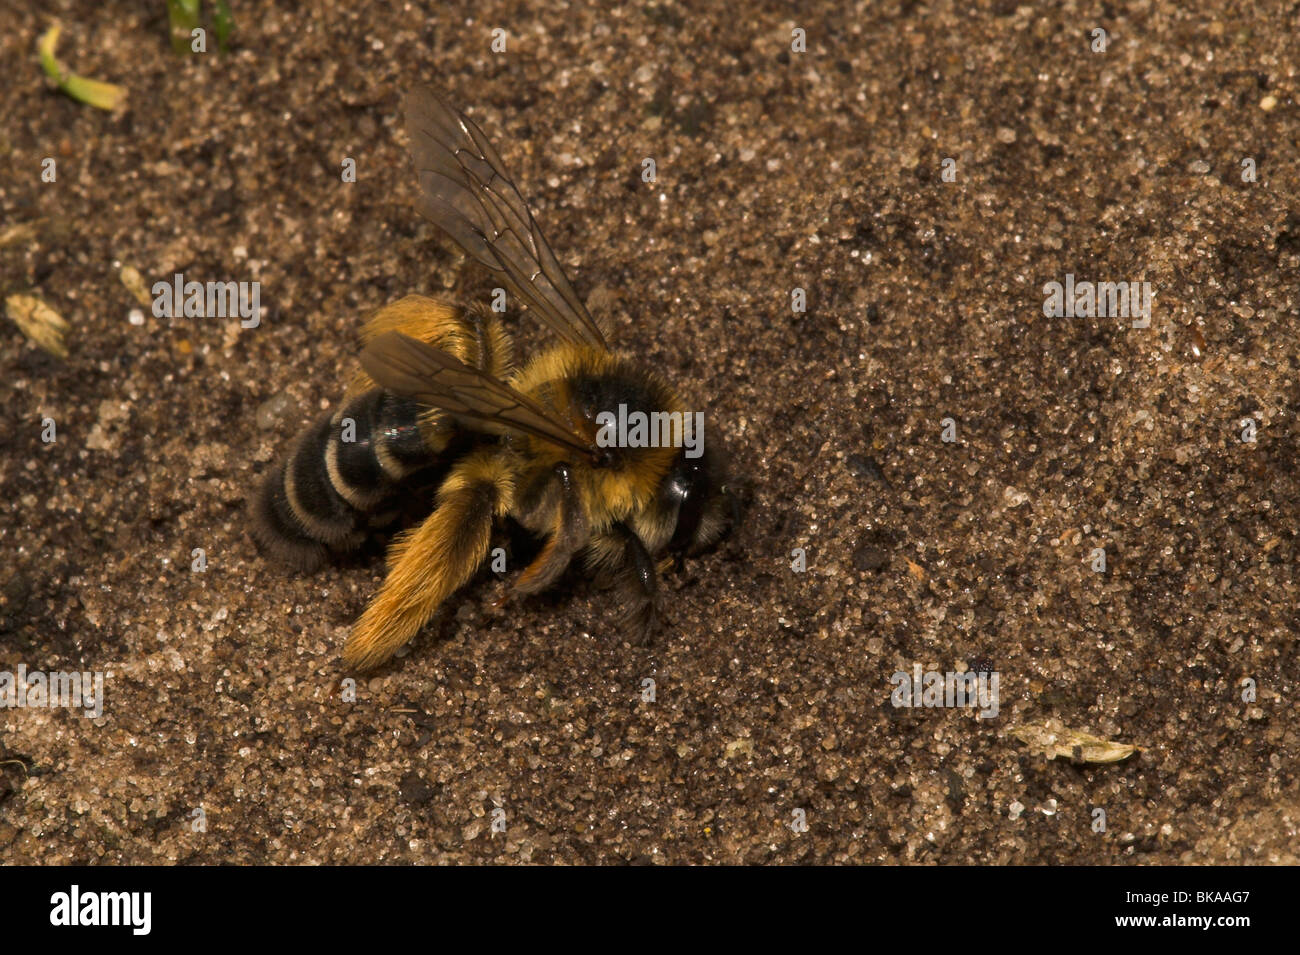 Pluimvoetbij, Dasypoda hirtipes, Pollen Specialist. Stock Photo